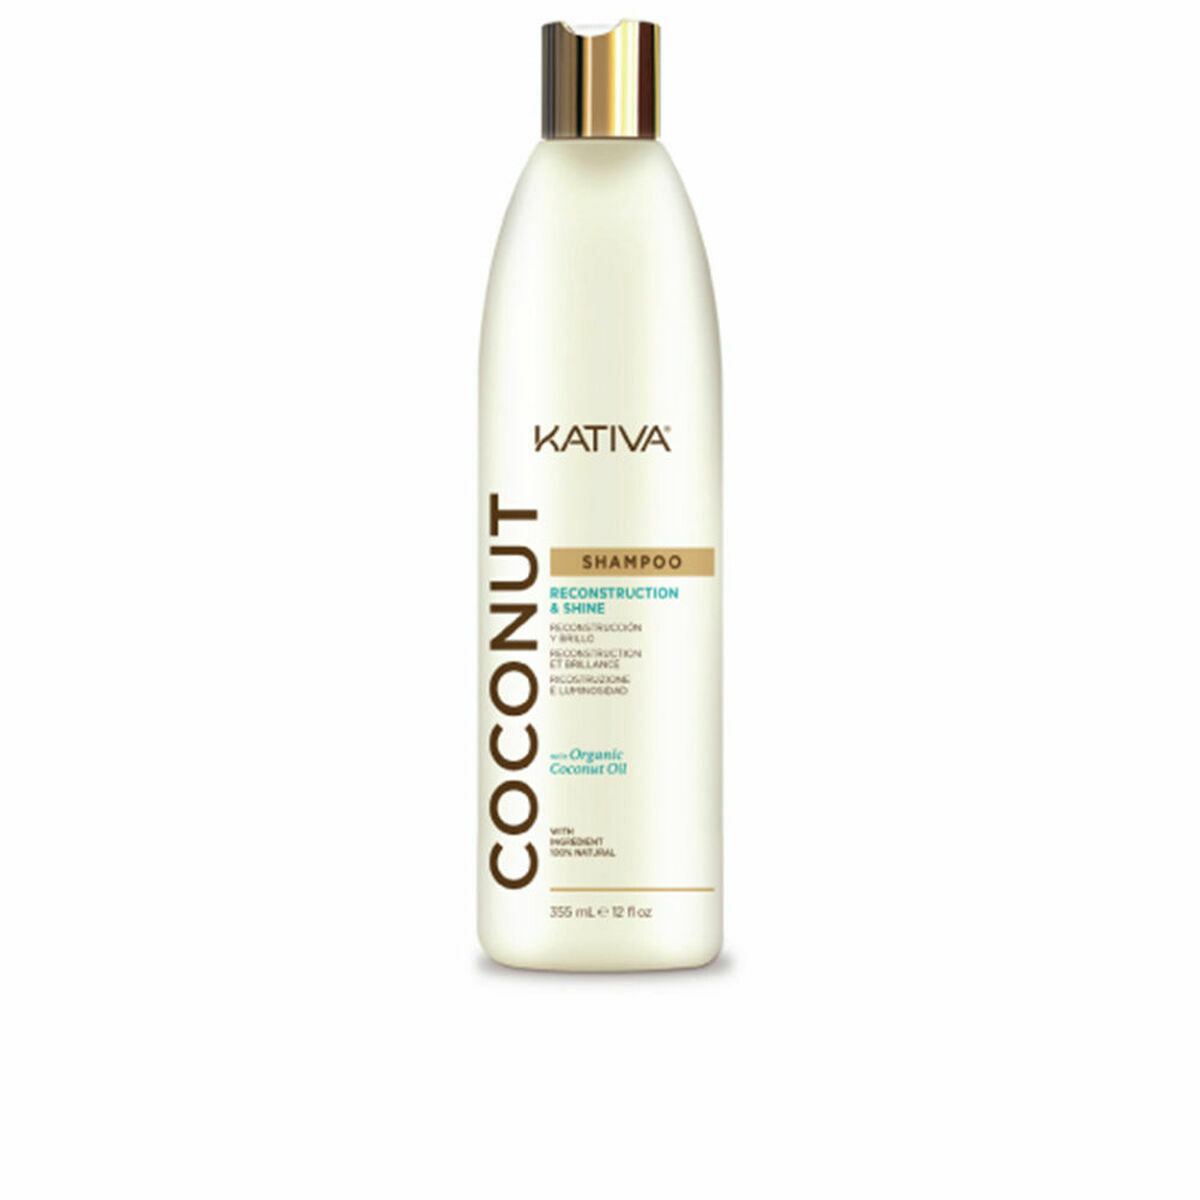 Șampon Kativa nucă de cocos